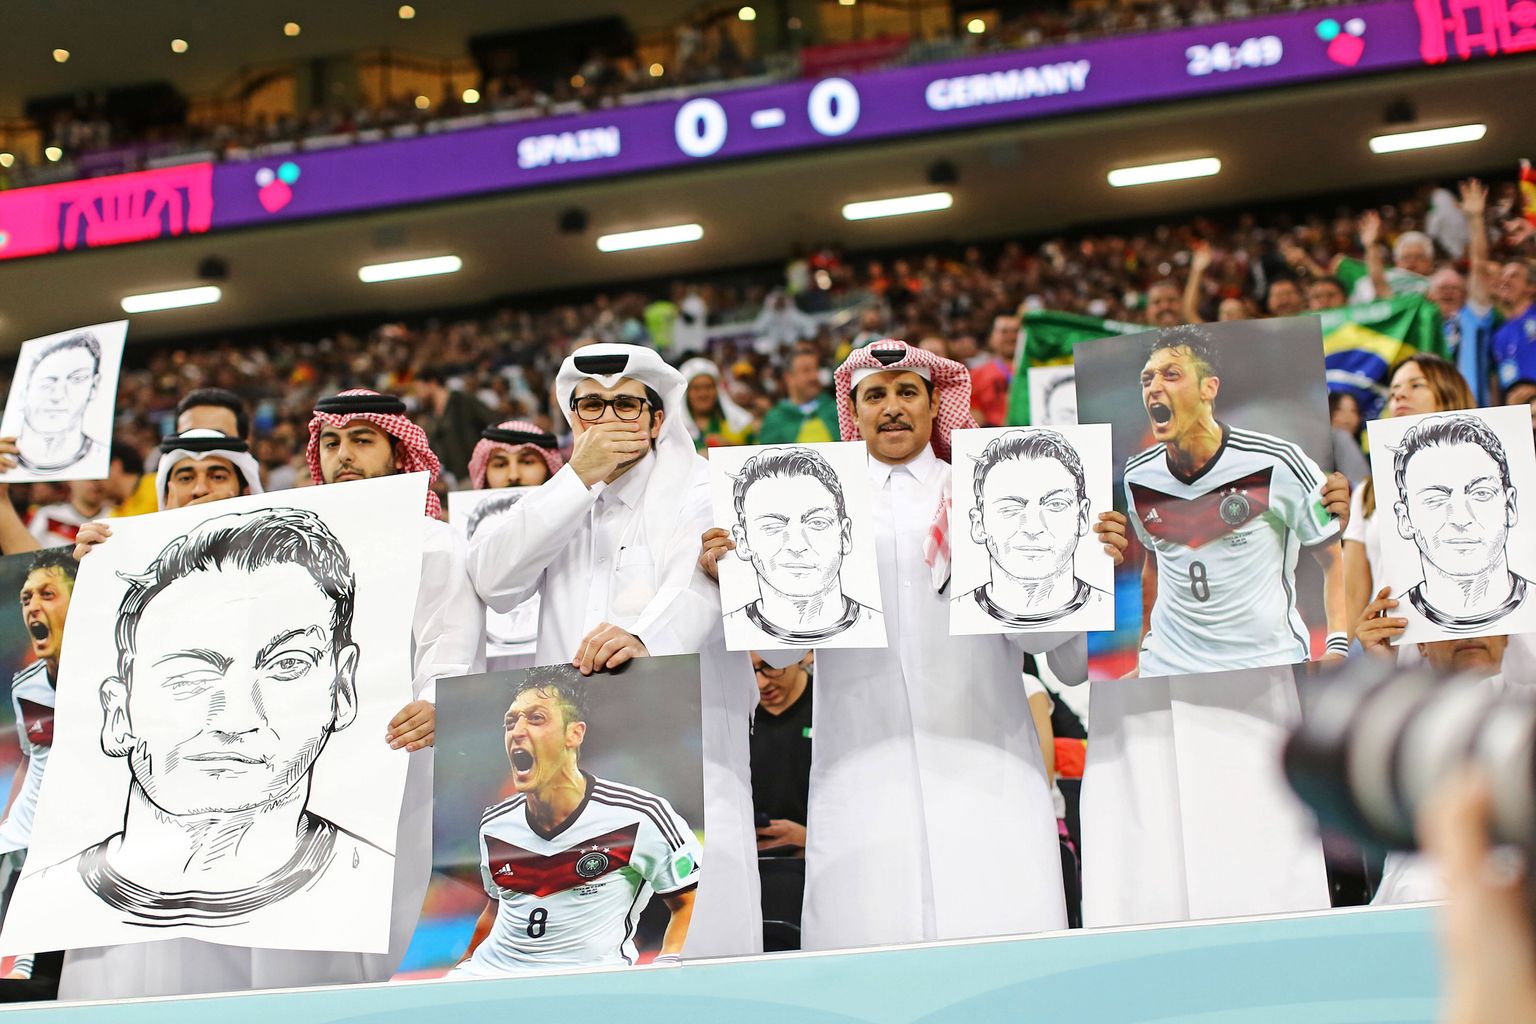 Kataris jalgpalli MMi 27. novembri 2022 kohtumise ajal Hispaania ja Saksamaa vahel nähti protesti Saksamaa koondise vastu. Katari jalgpallifännide käes olid Saksa endise koondislase, Türgi juurtega Mesut Özili pildid